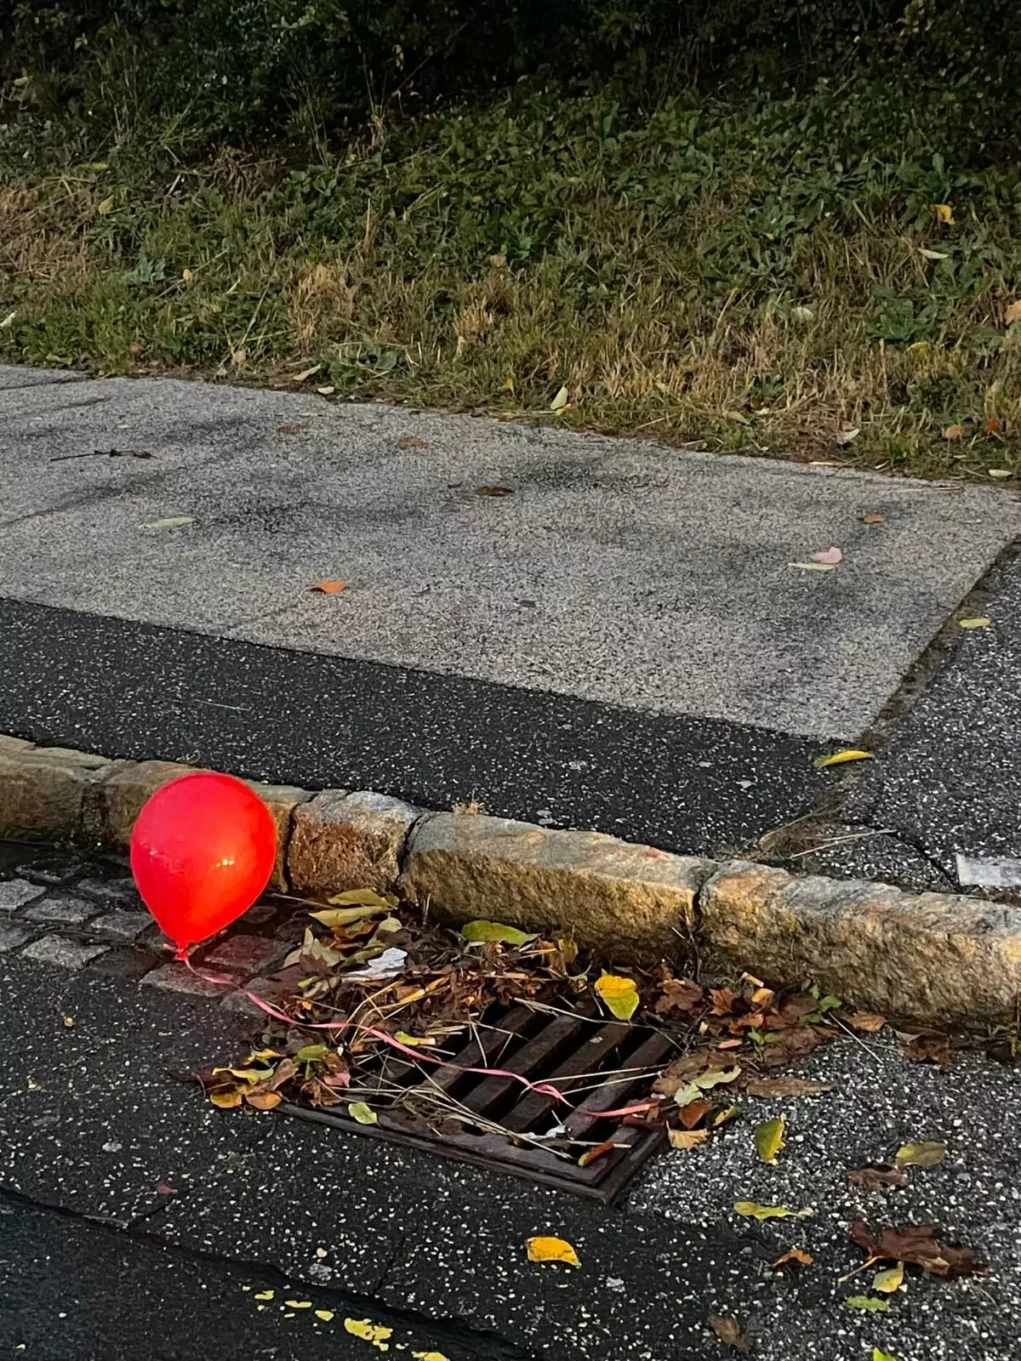 Halloween-Nacht beginnt: Wieder Es-Luftballone in Villach gesichtet